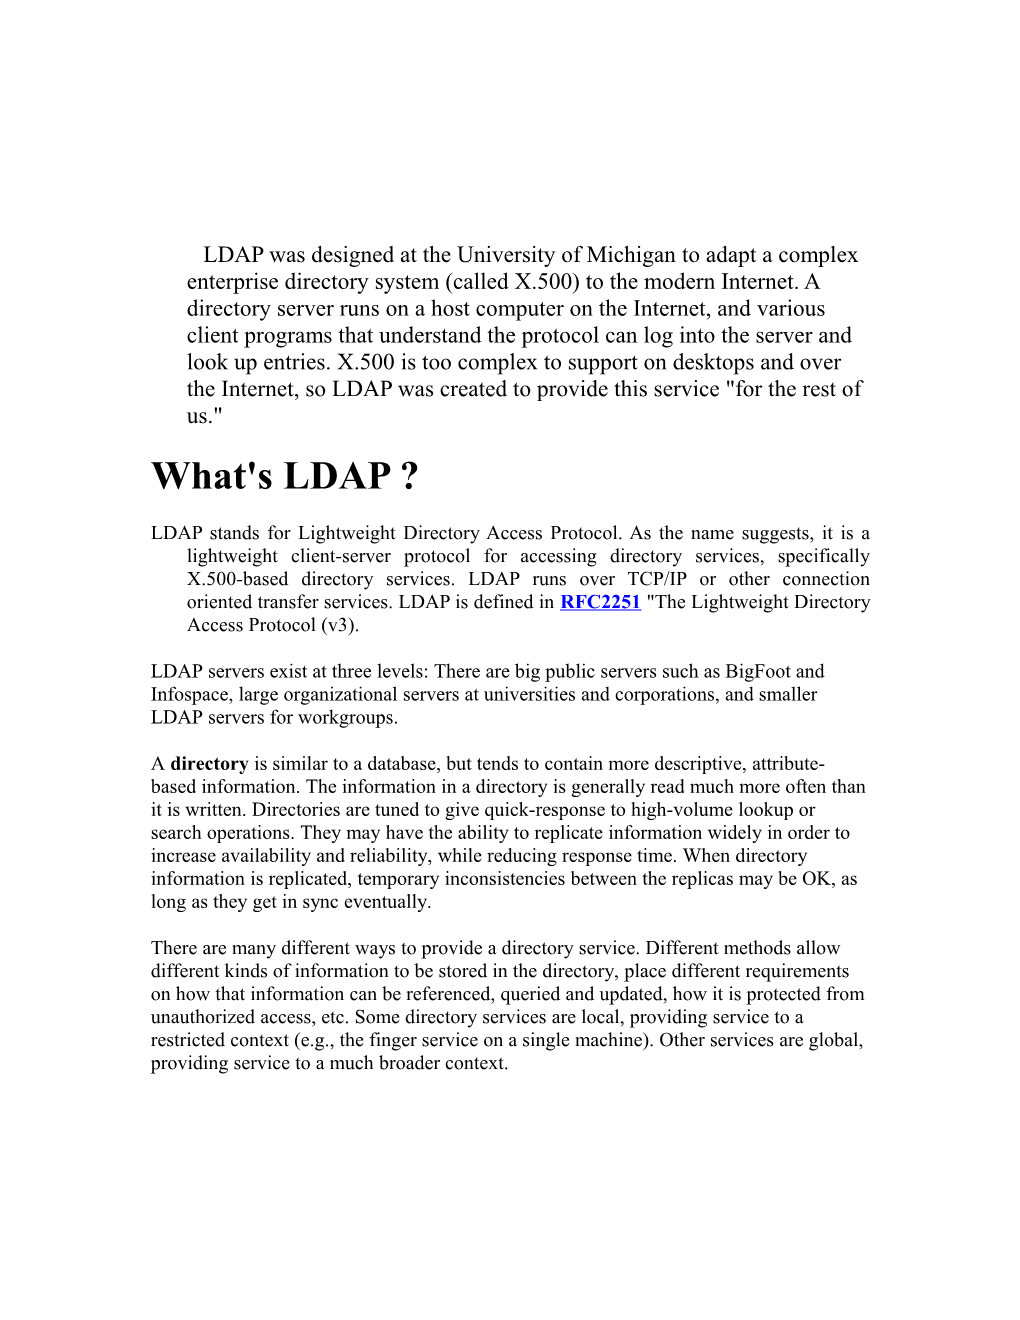 Installation of LDAP